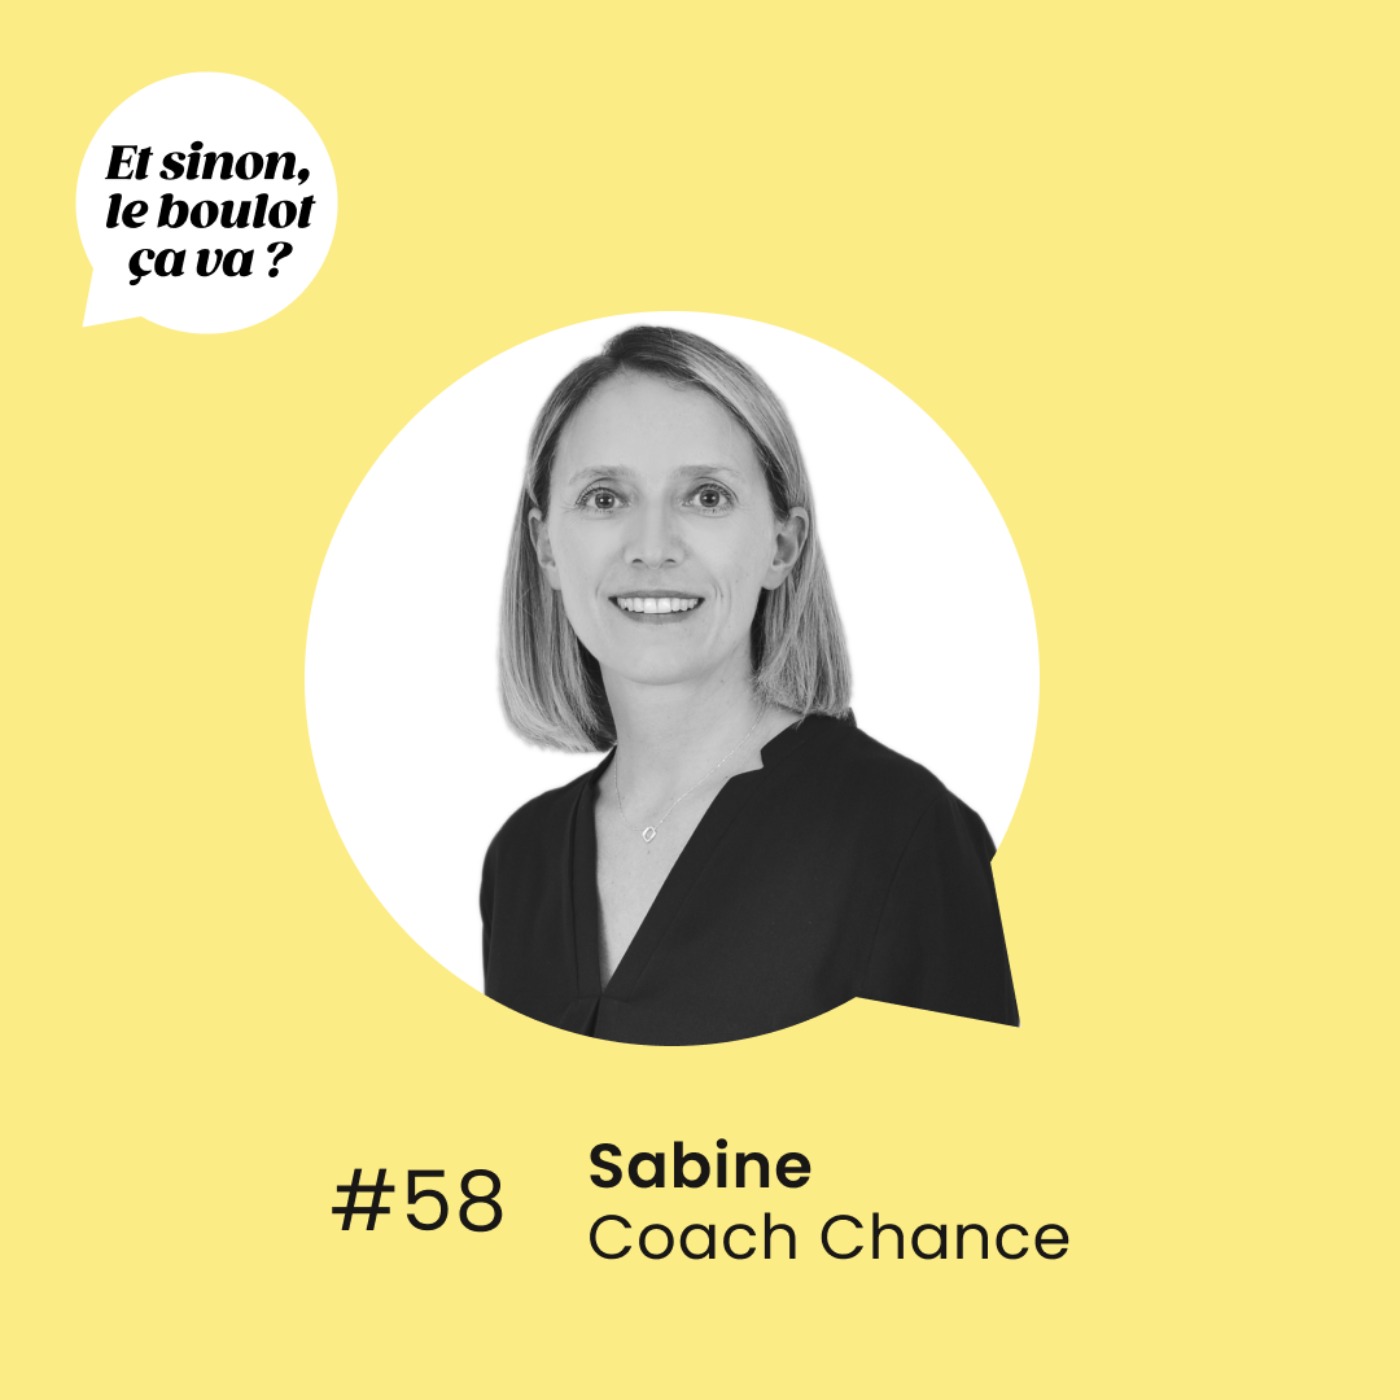 #58 : "Apprendre à débrancher de sa vie pro" par Sabine, coach